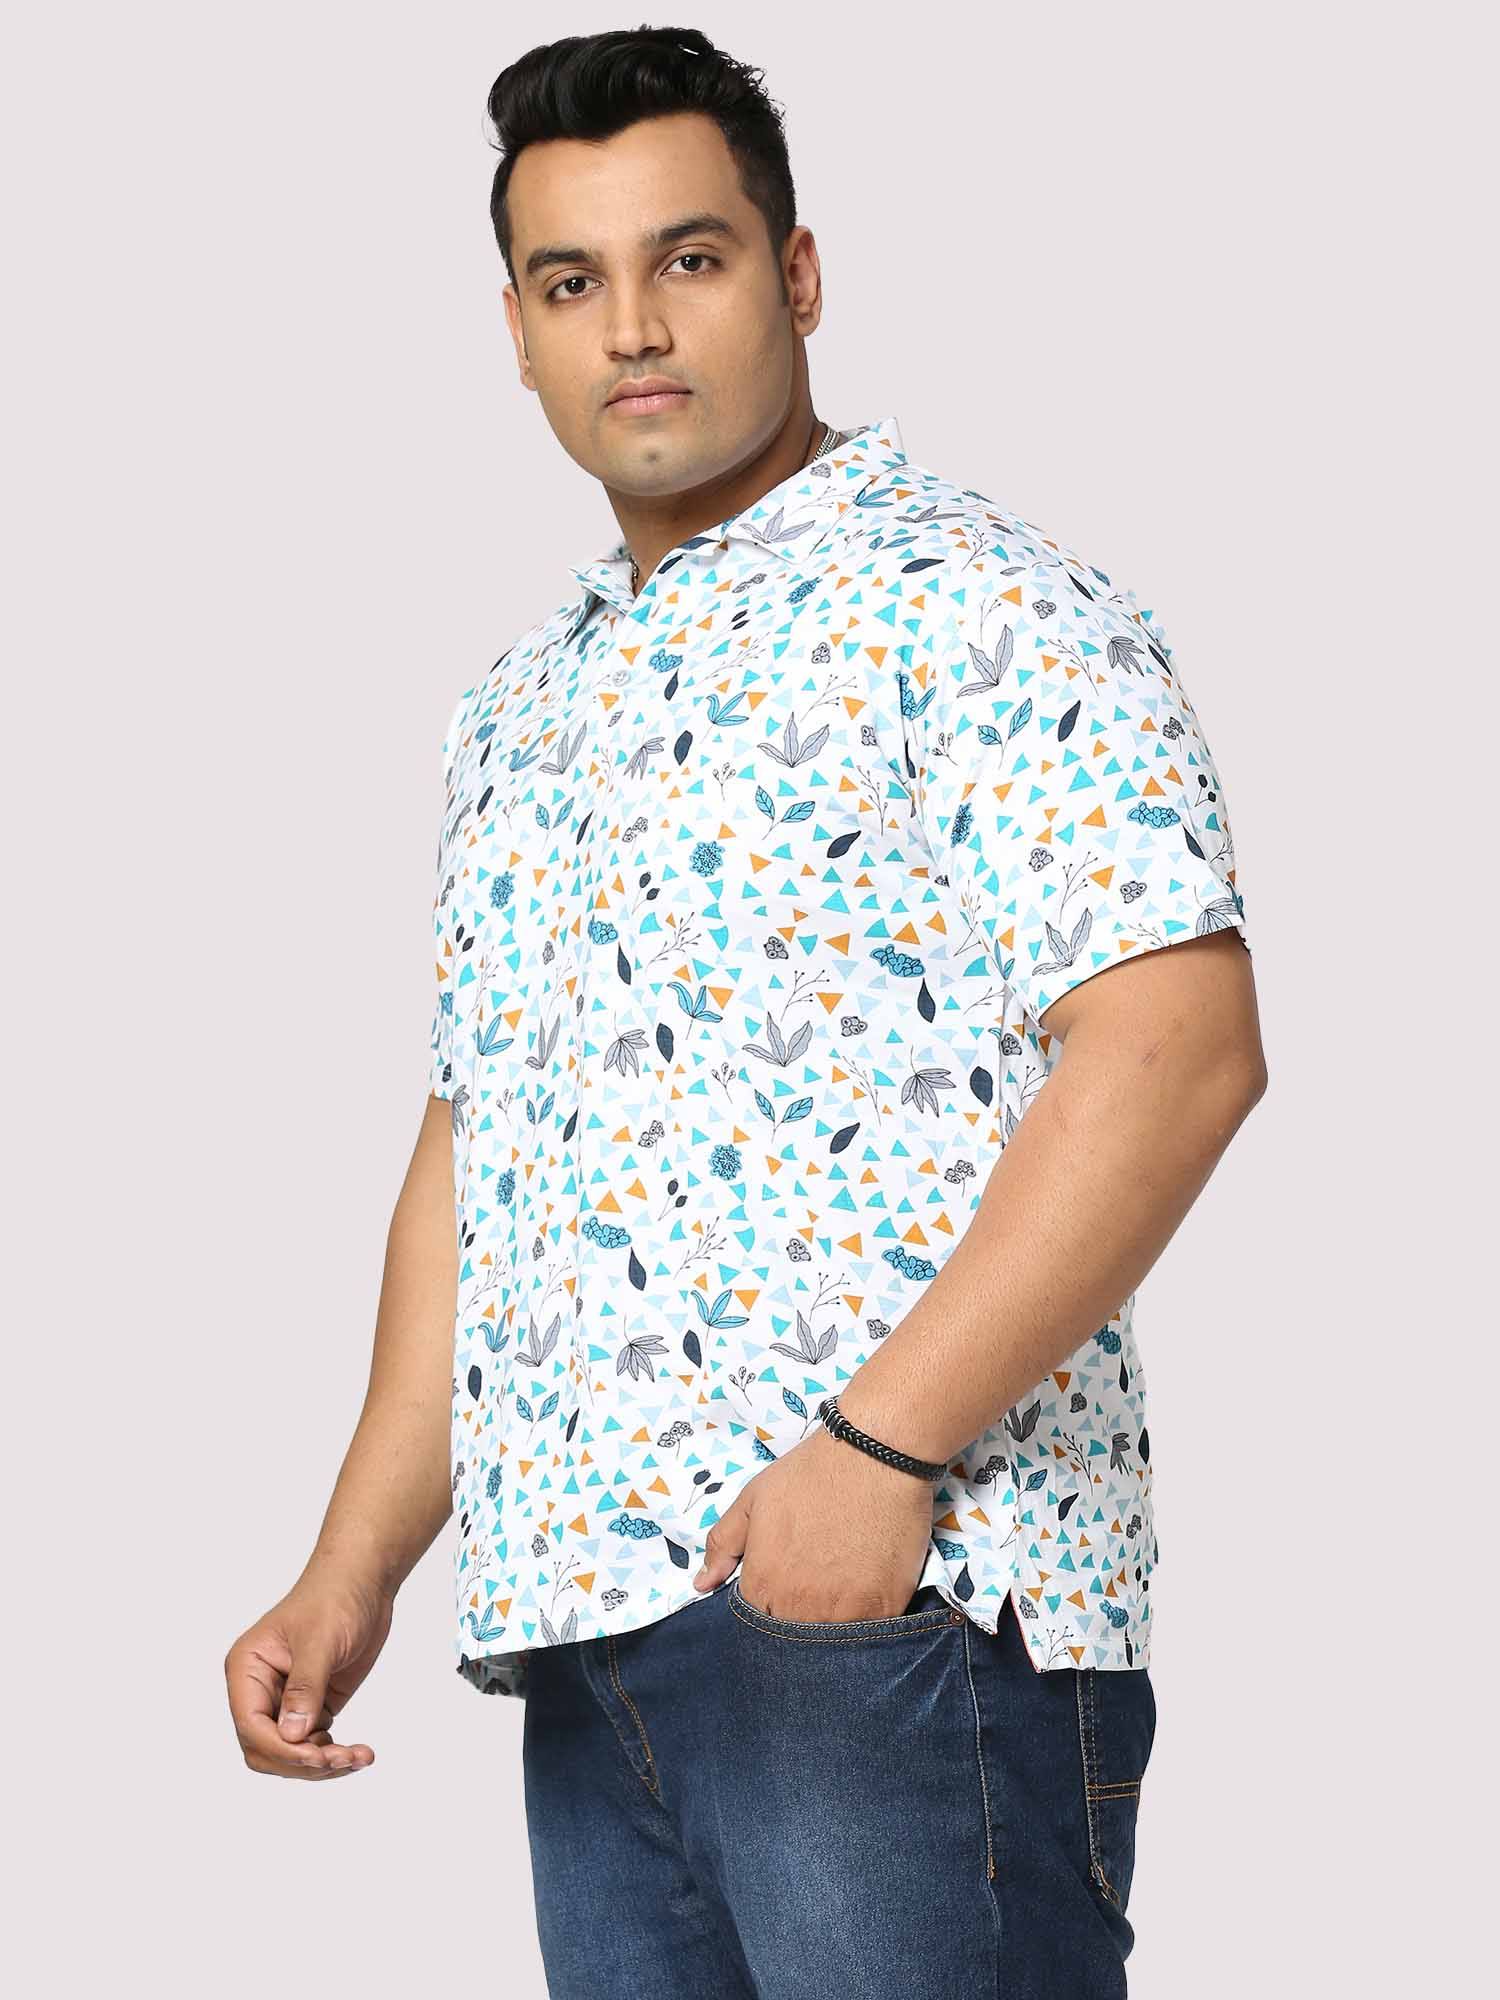 Guniaa Glider Digital Printed Half-Sleeves Shirt - Guniaa Fashions